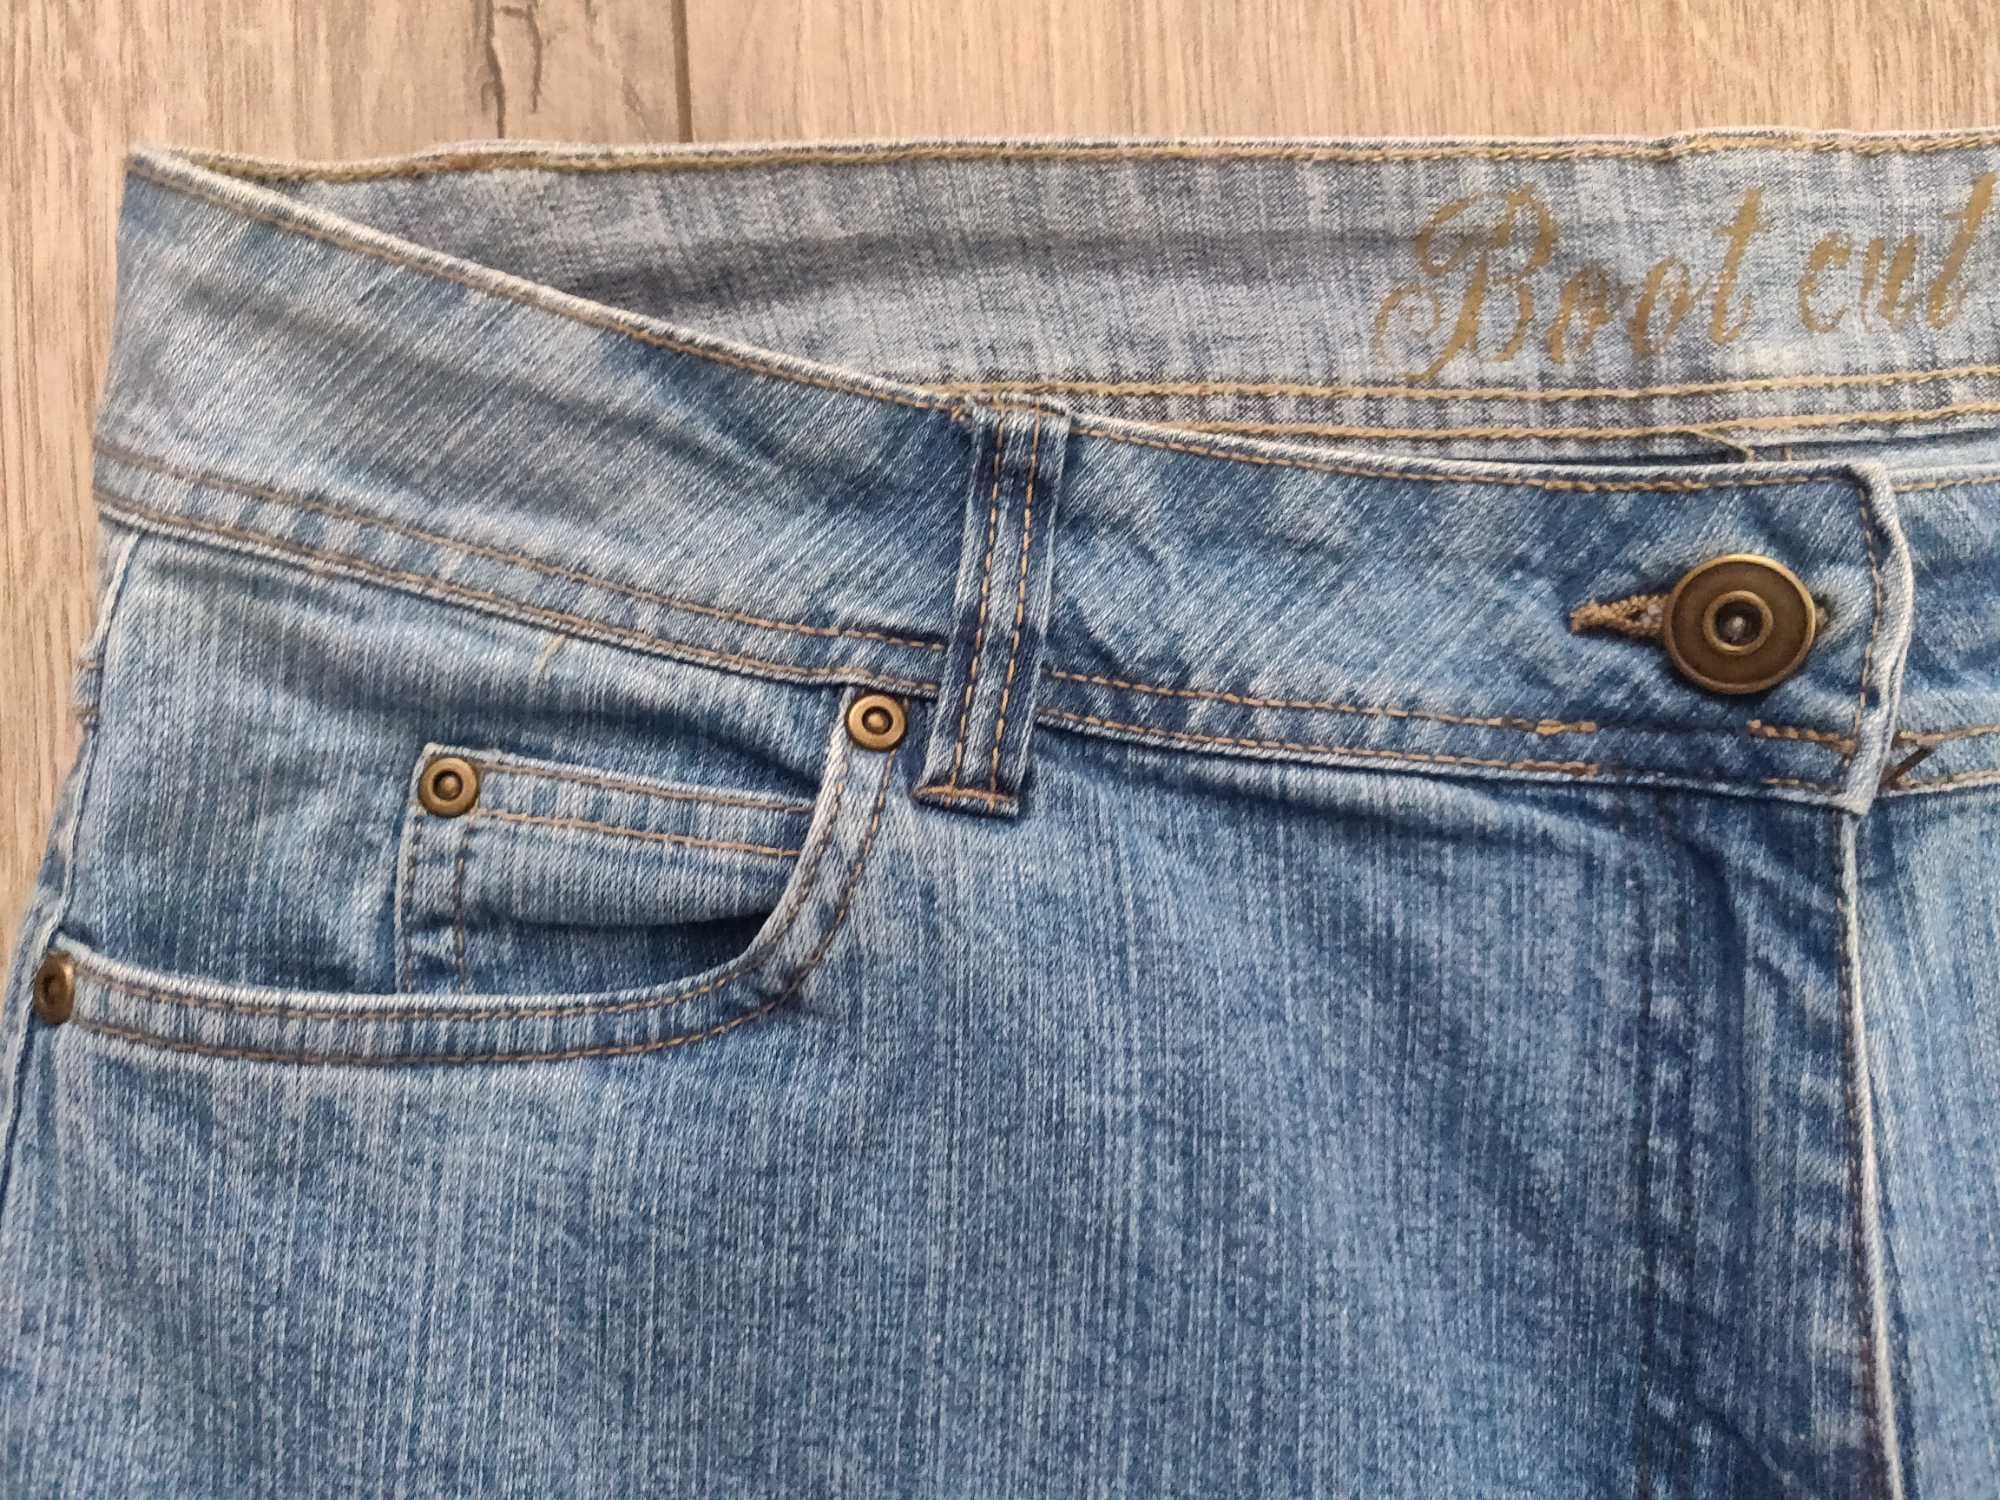 Женские джинсы George  Boot cut  (большой размер 54-56) голубые